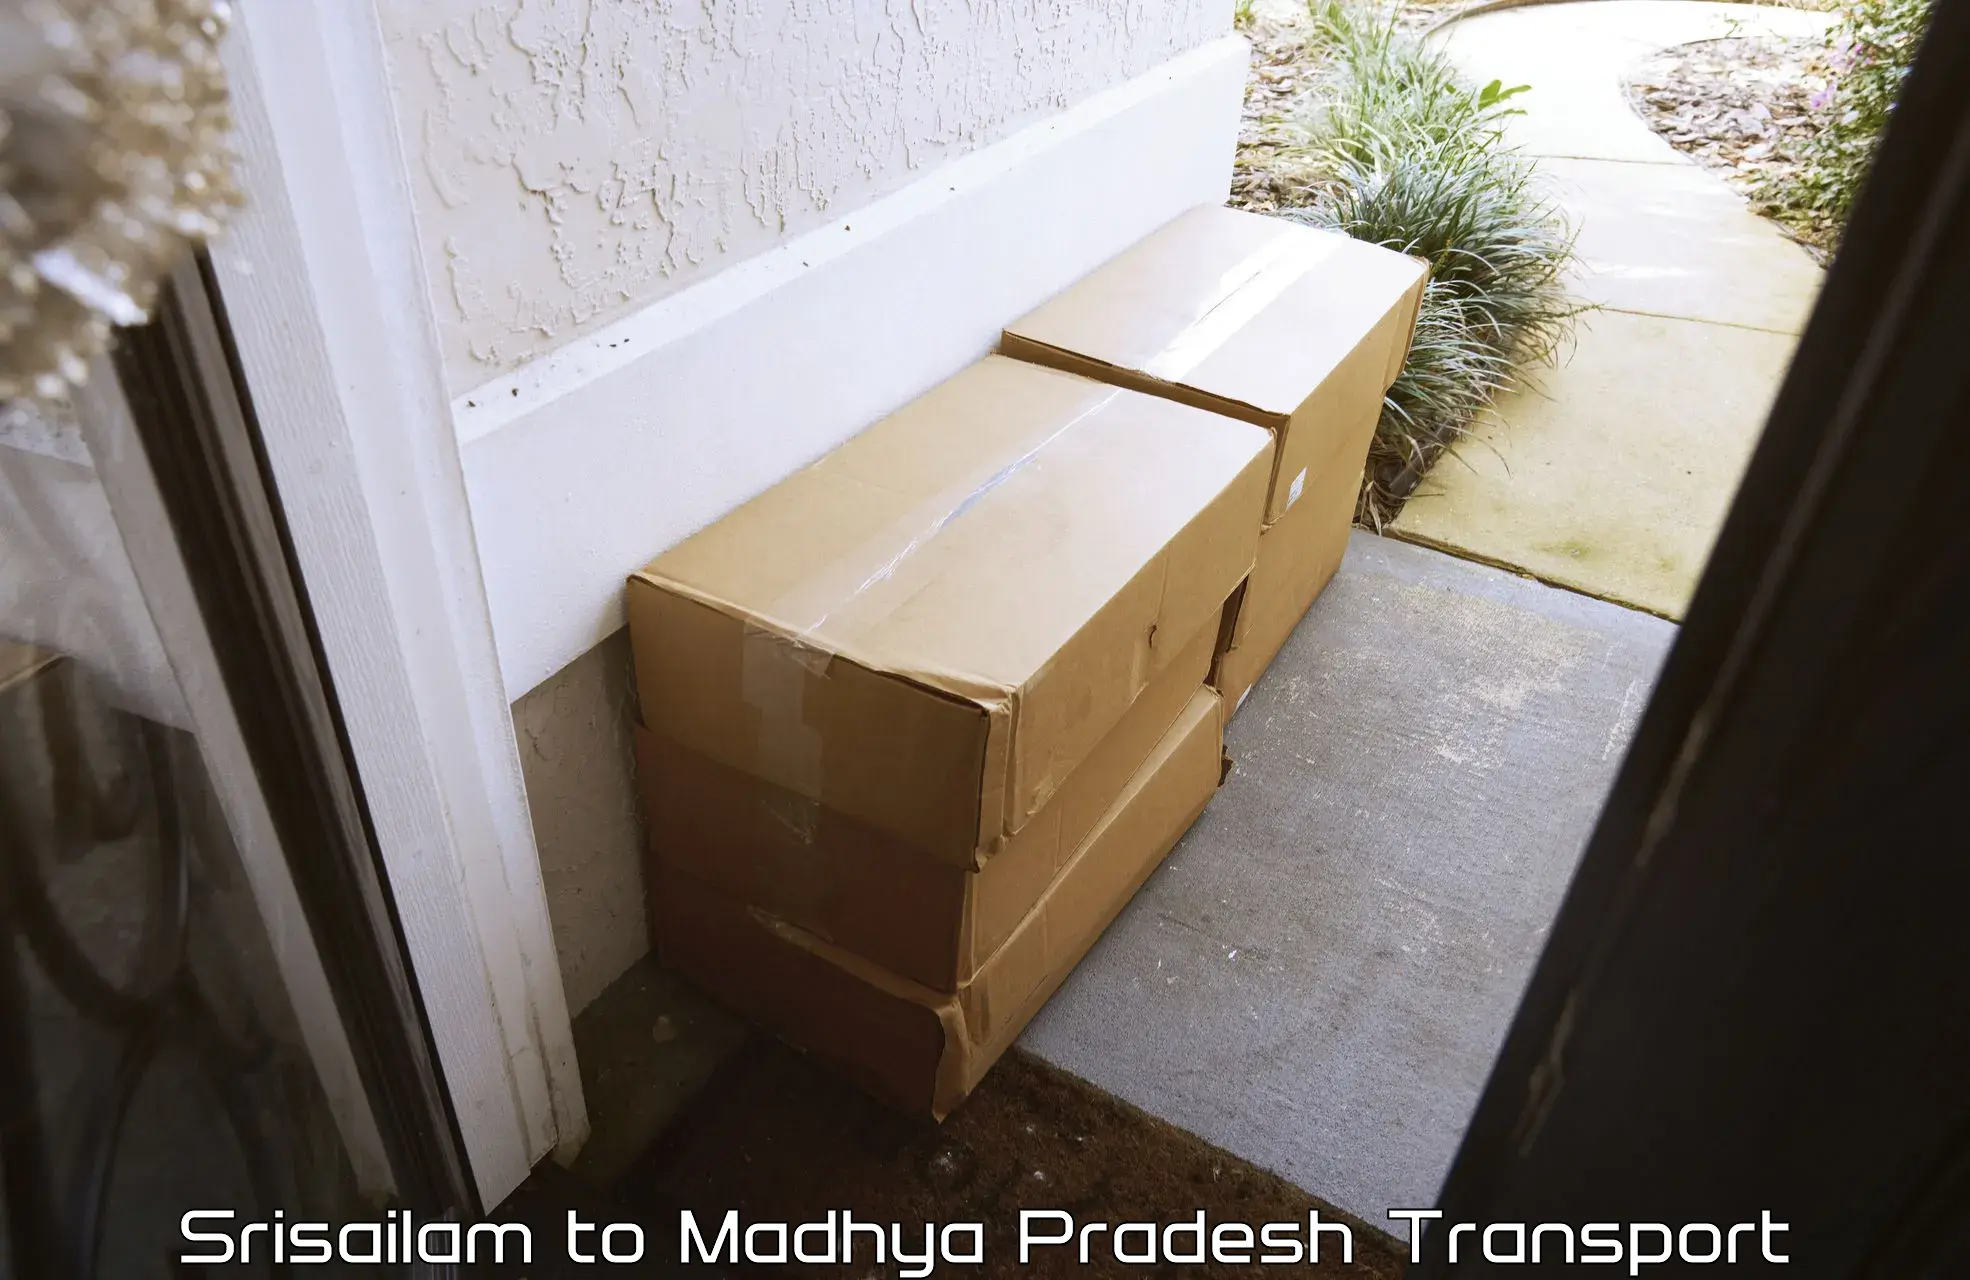 Furniture transport service Srisailam to Multai